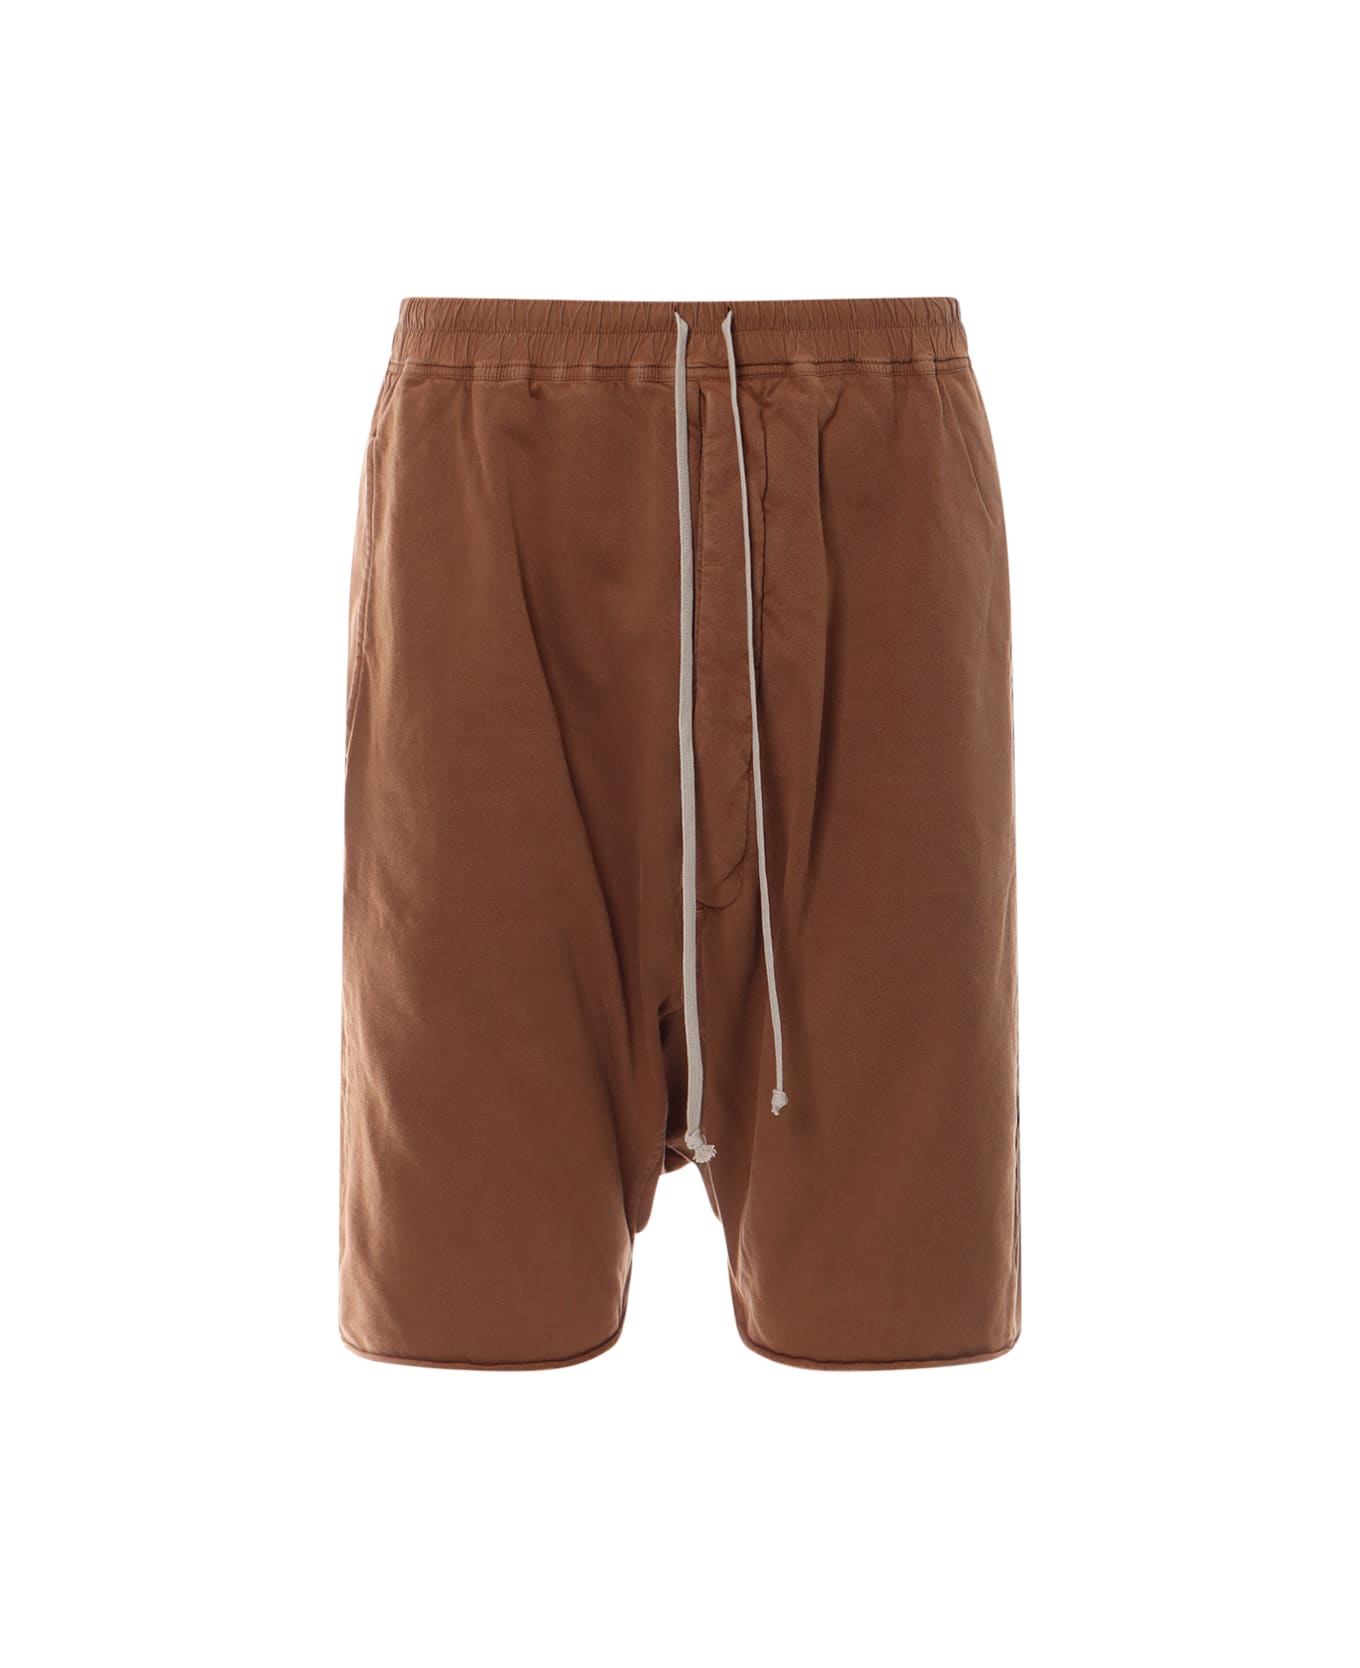 DRKSHDW Bermuda Shorts - Brown